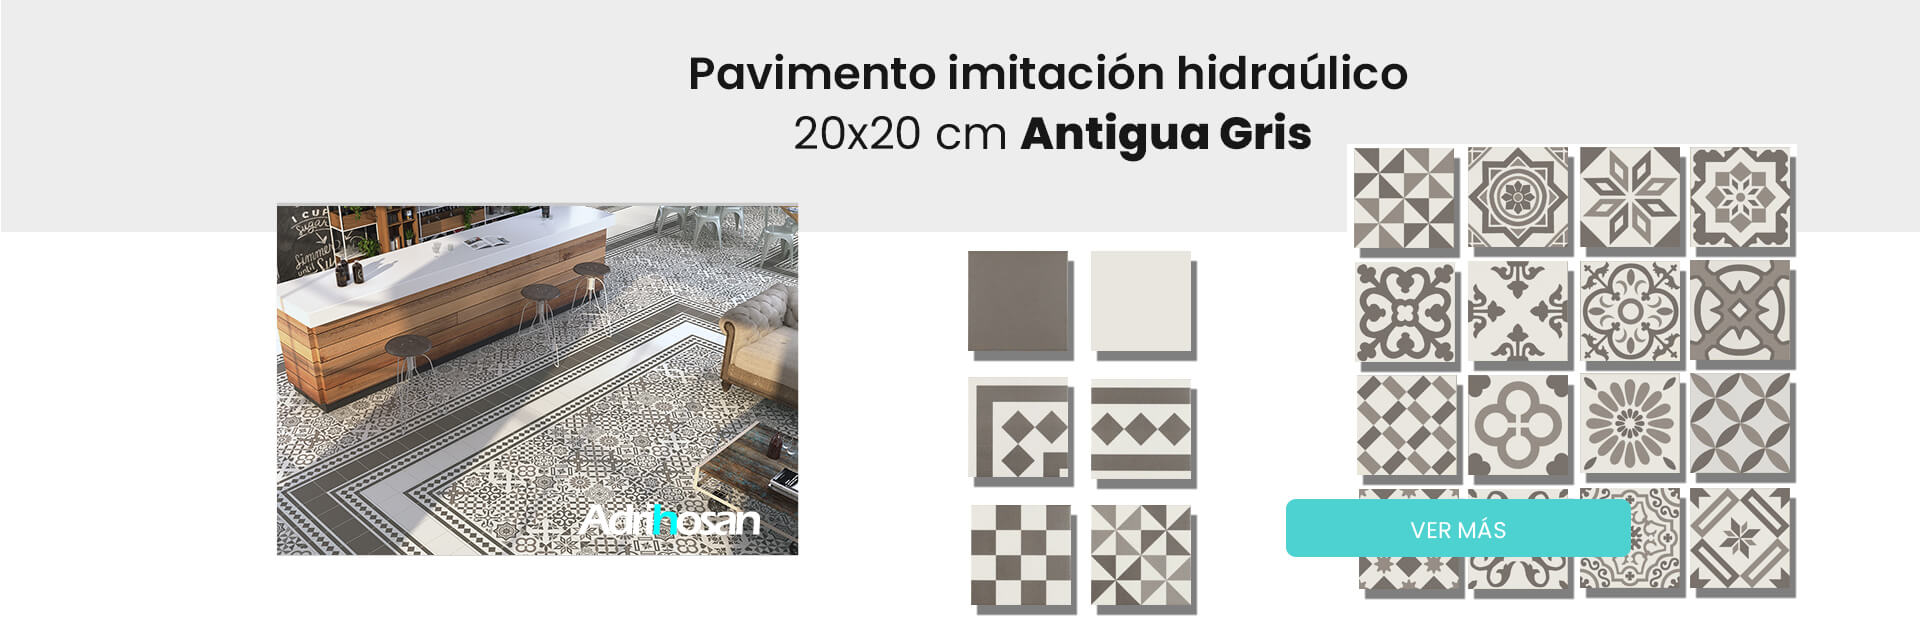 Pavimento imitación hidráulico antigua gris 20x20 cm 